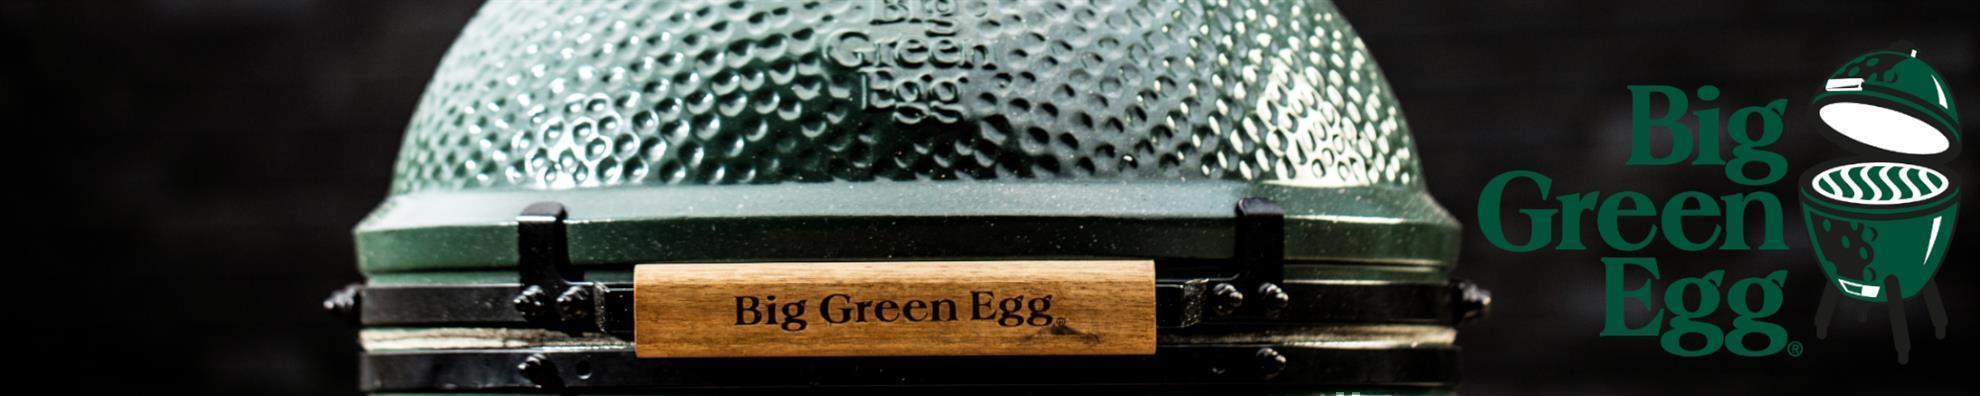 Big Green Egg - ConvEGGtor Mini